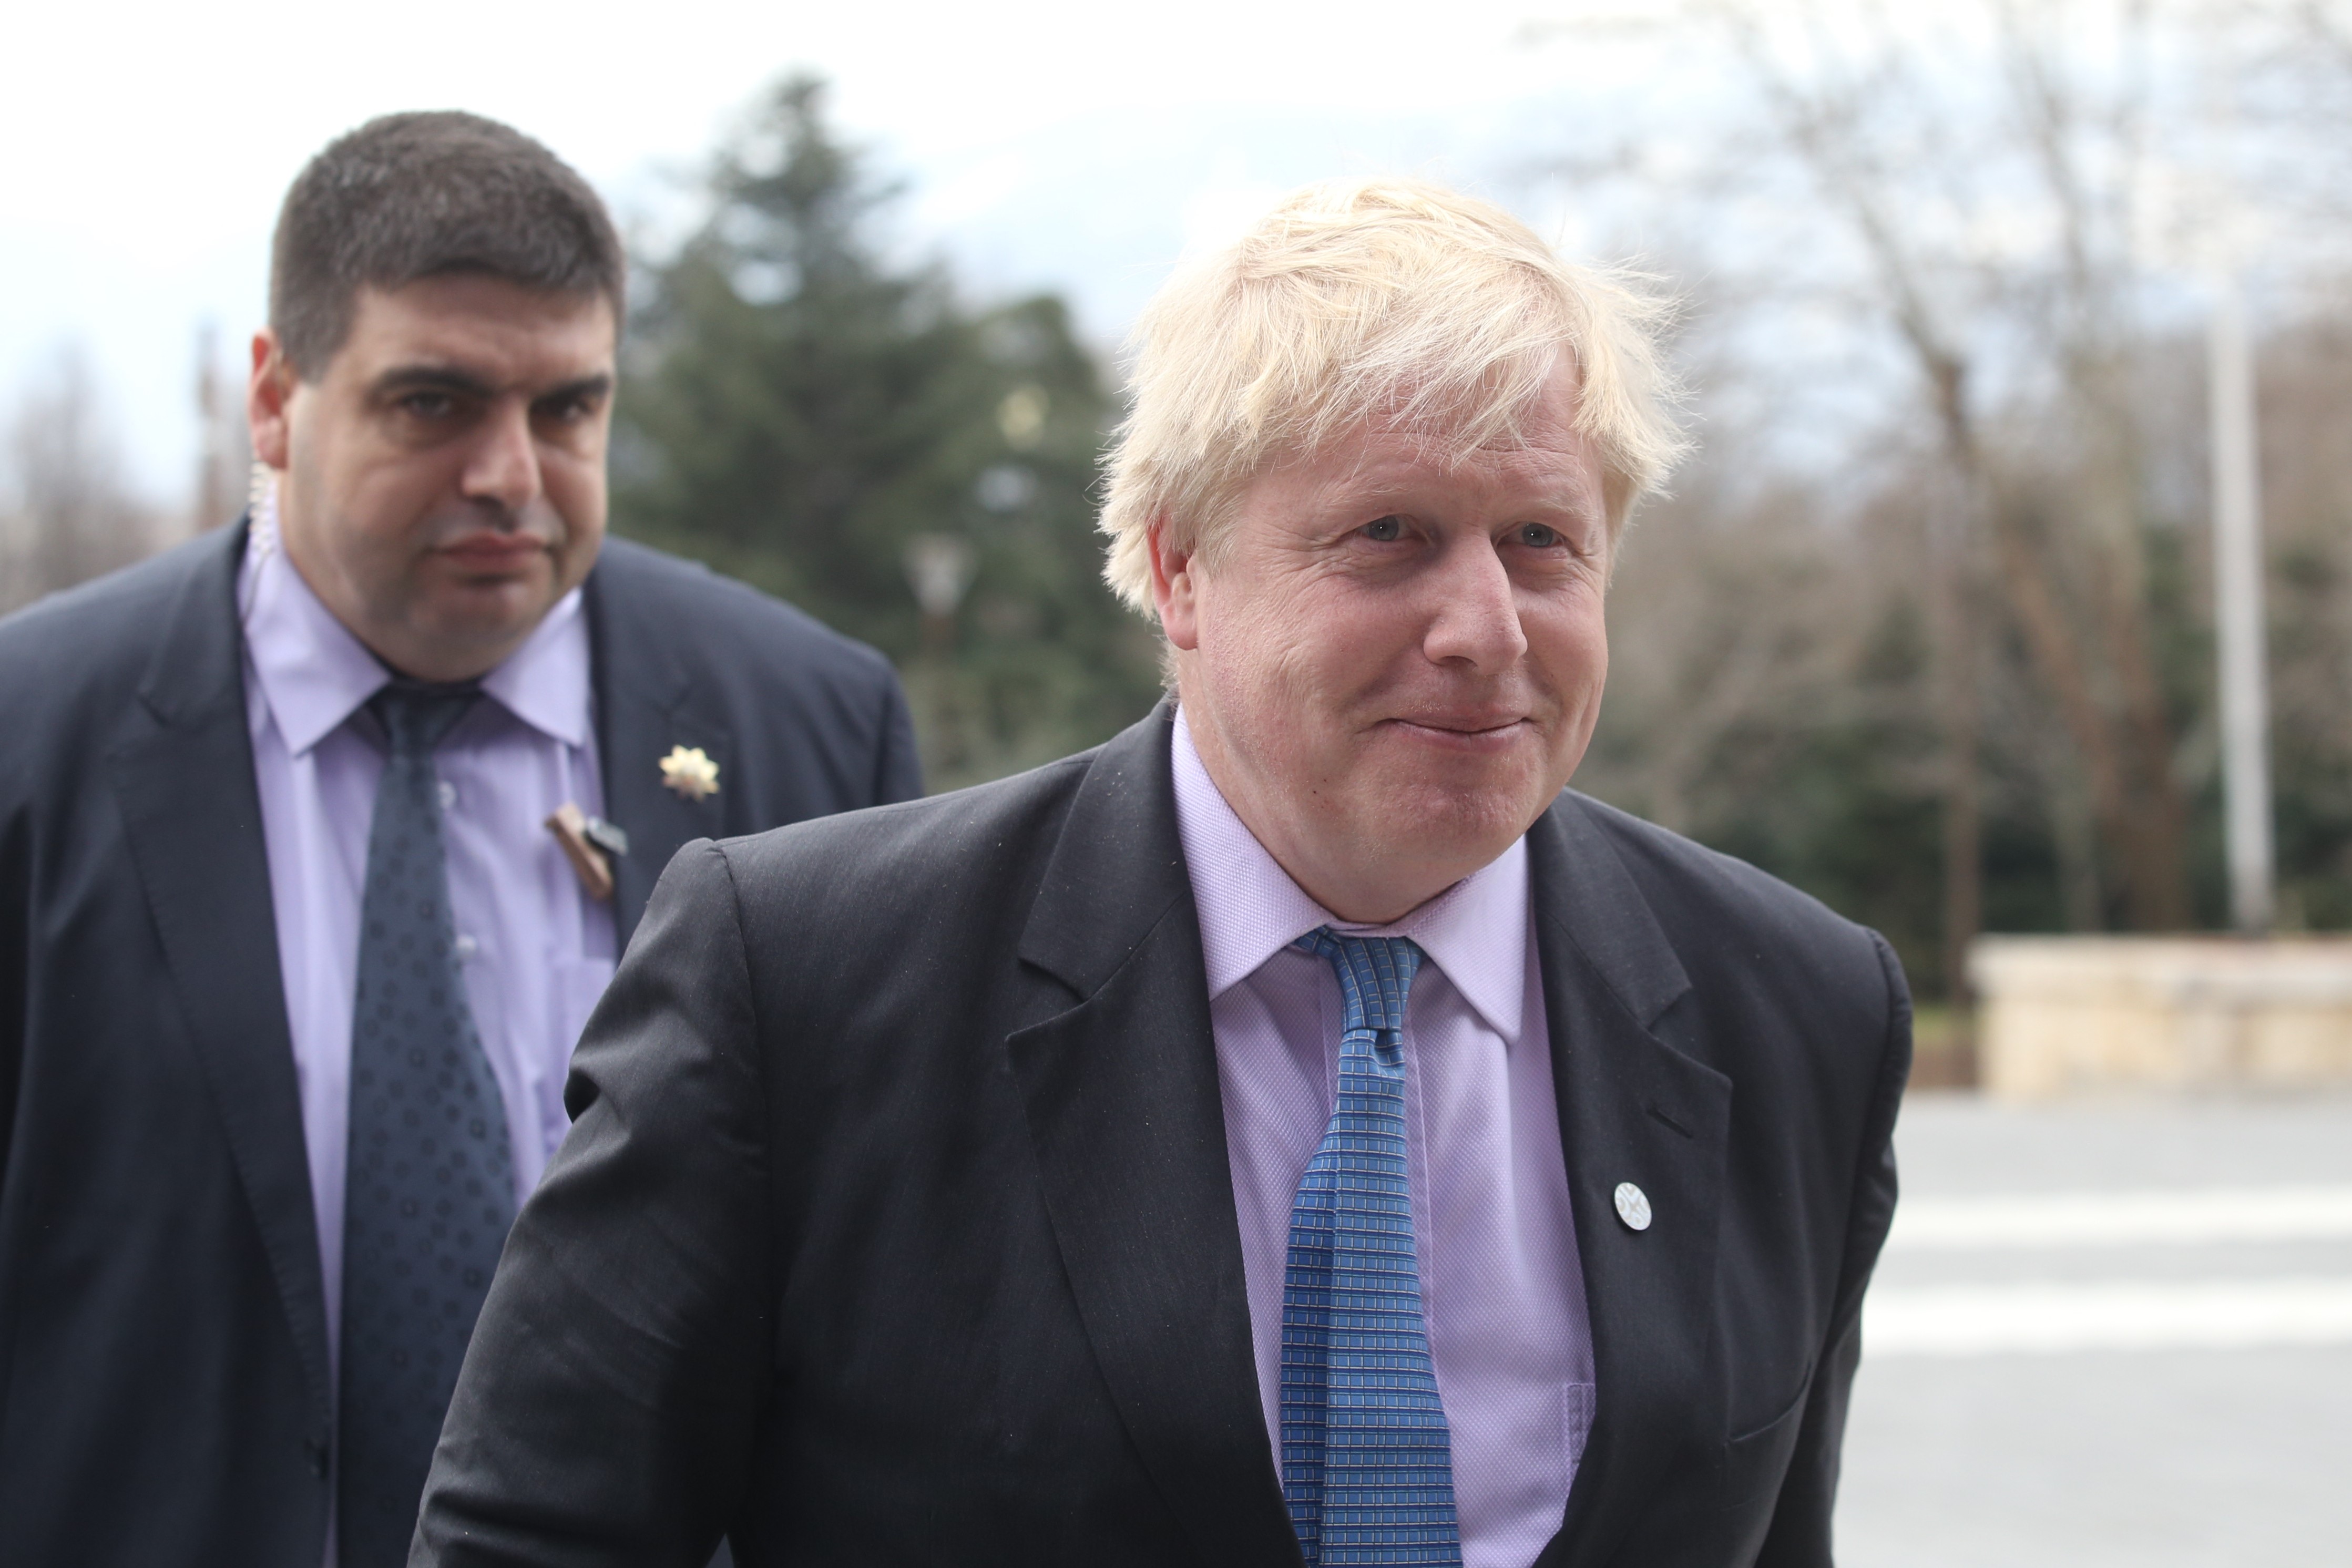 Premier Wielkiej Brytanii Boris Johnson. Zdjęcie przedstawia premiera na dworze, ujęcie przedstawia ramiona oraz głowę. Premier ubrany jest w granatową marynarkę, fioletową koszulę oraz niebieski krawat. W klapie ma srebrną wpinkę. Za premierem kroczy ochroniarz. W tle widać drzewa.